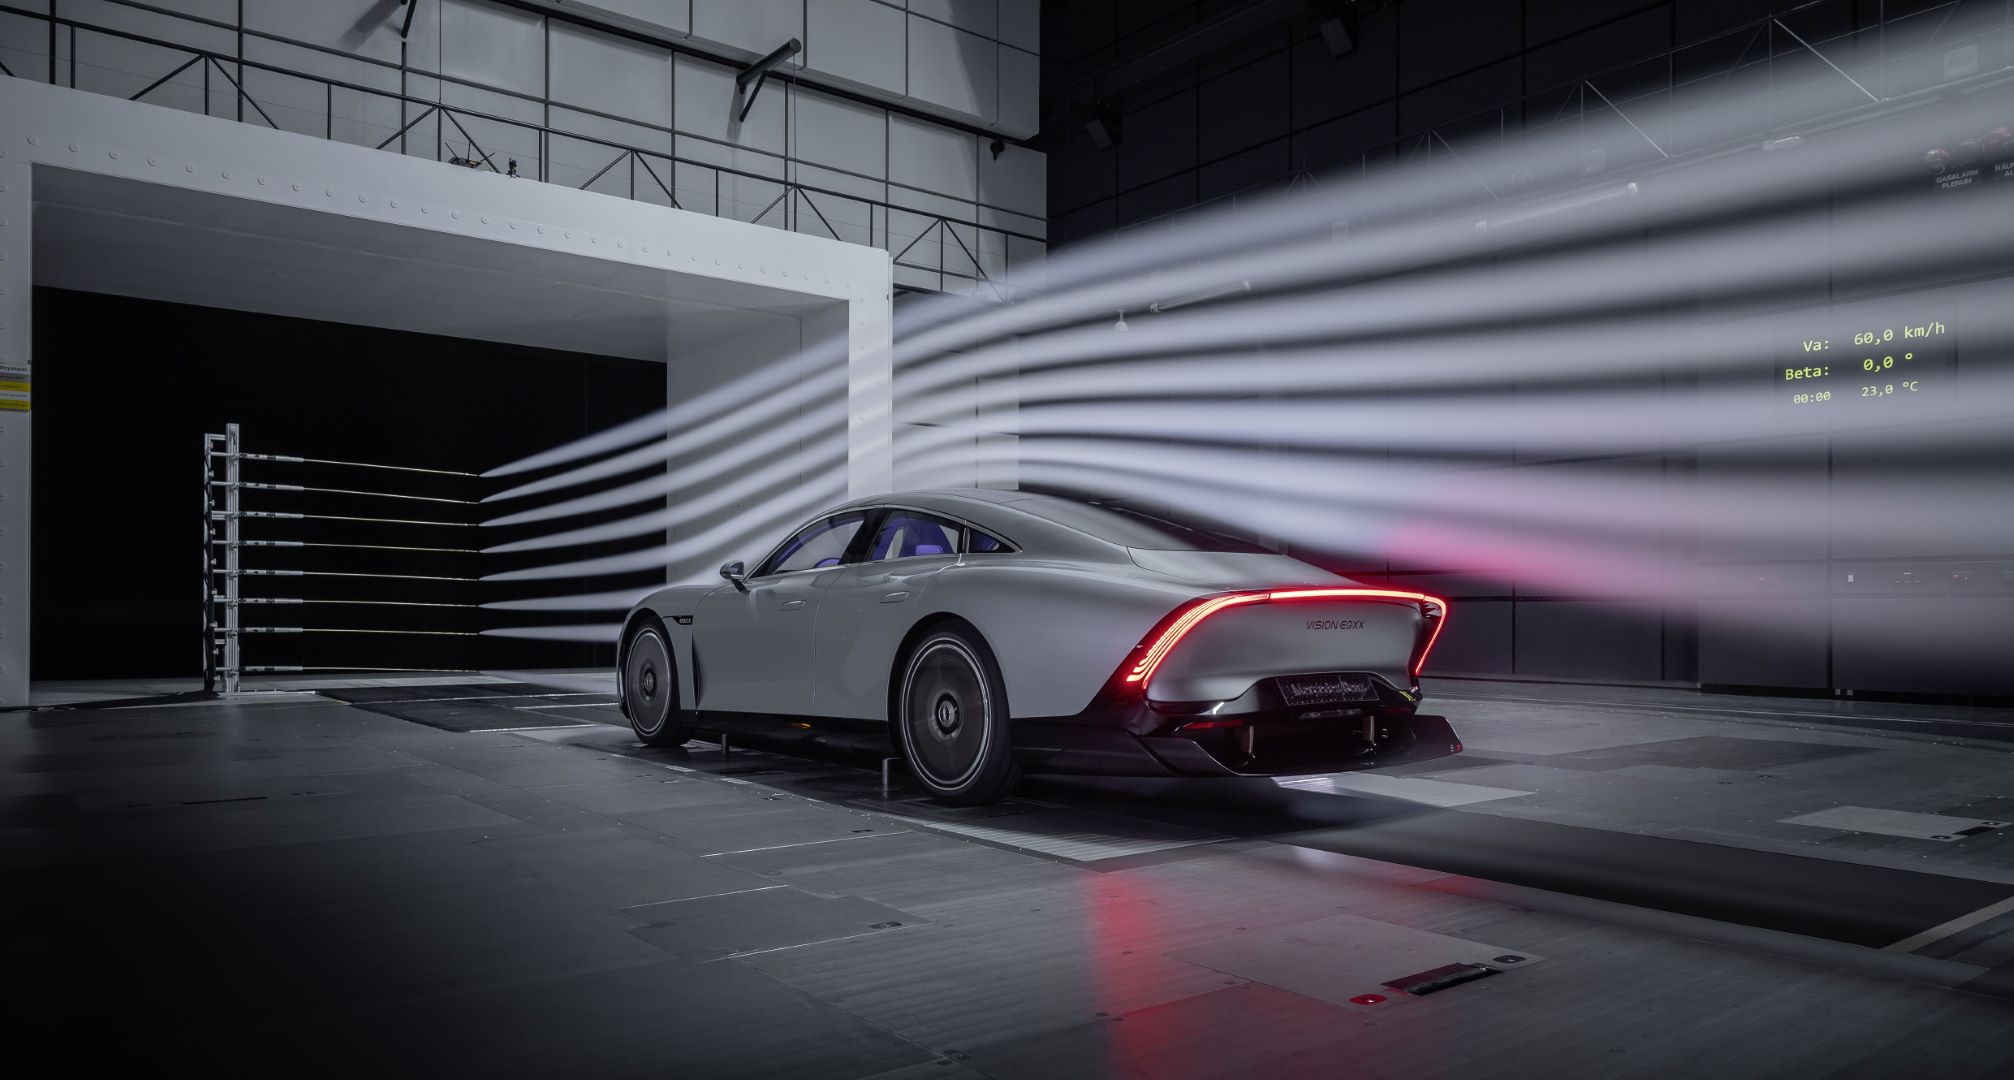 Mercedes-Benz trình làng concept Vision EQXX, mẫu xe tương lai với màn hình 8K 47.5-inch và phạm vi hoạt động lên đến 1,000 km